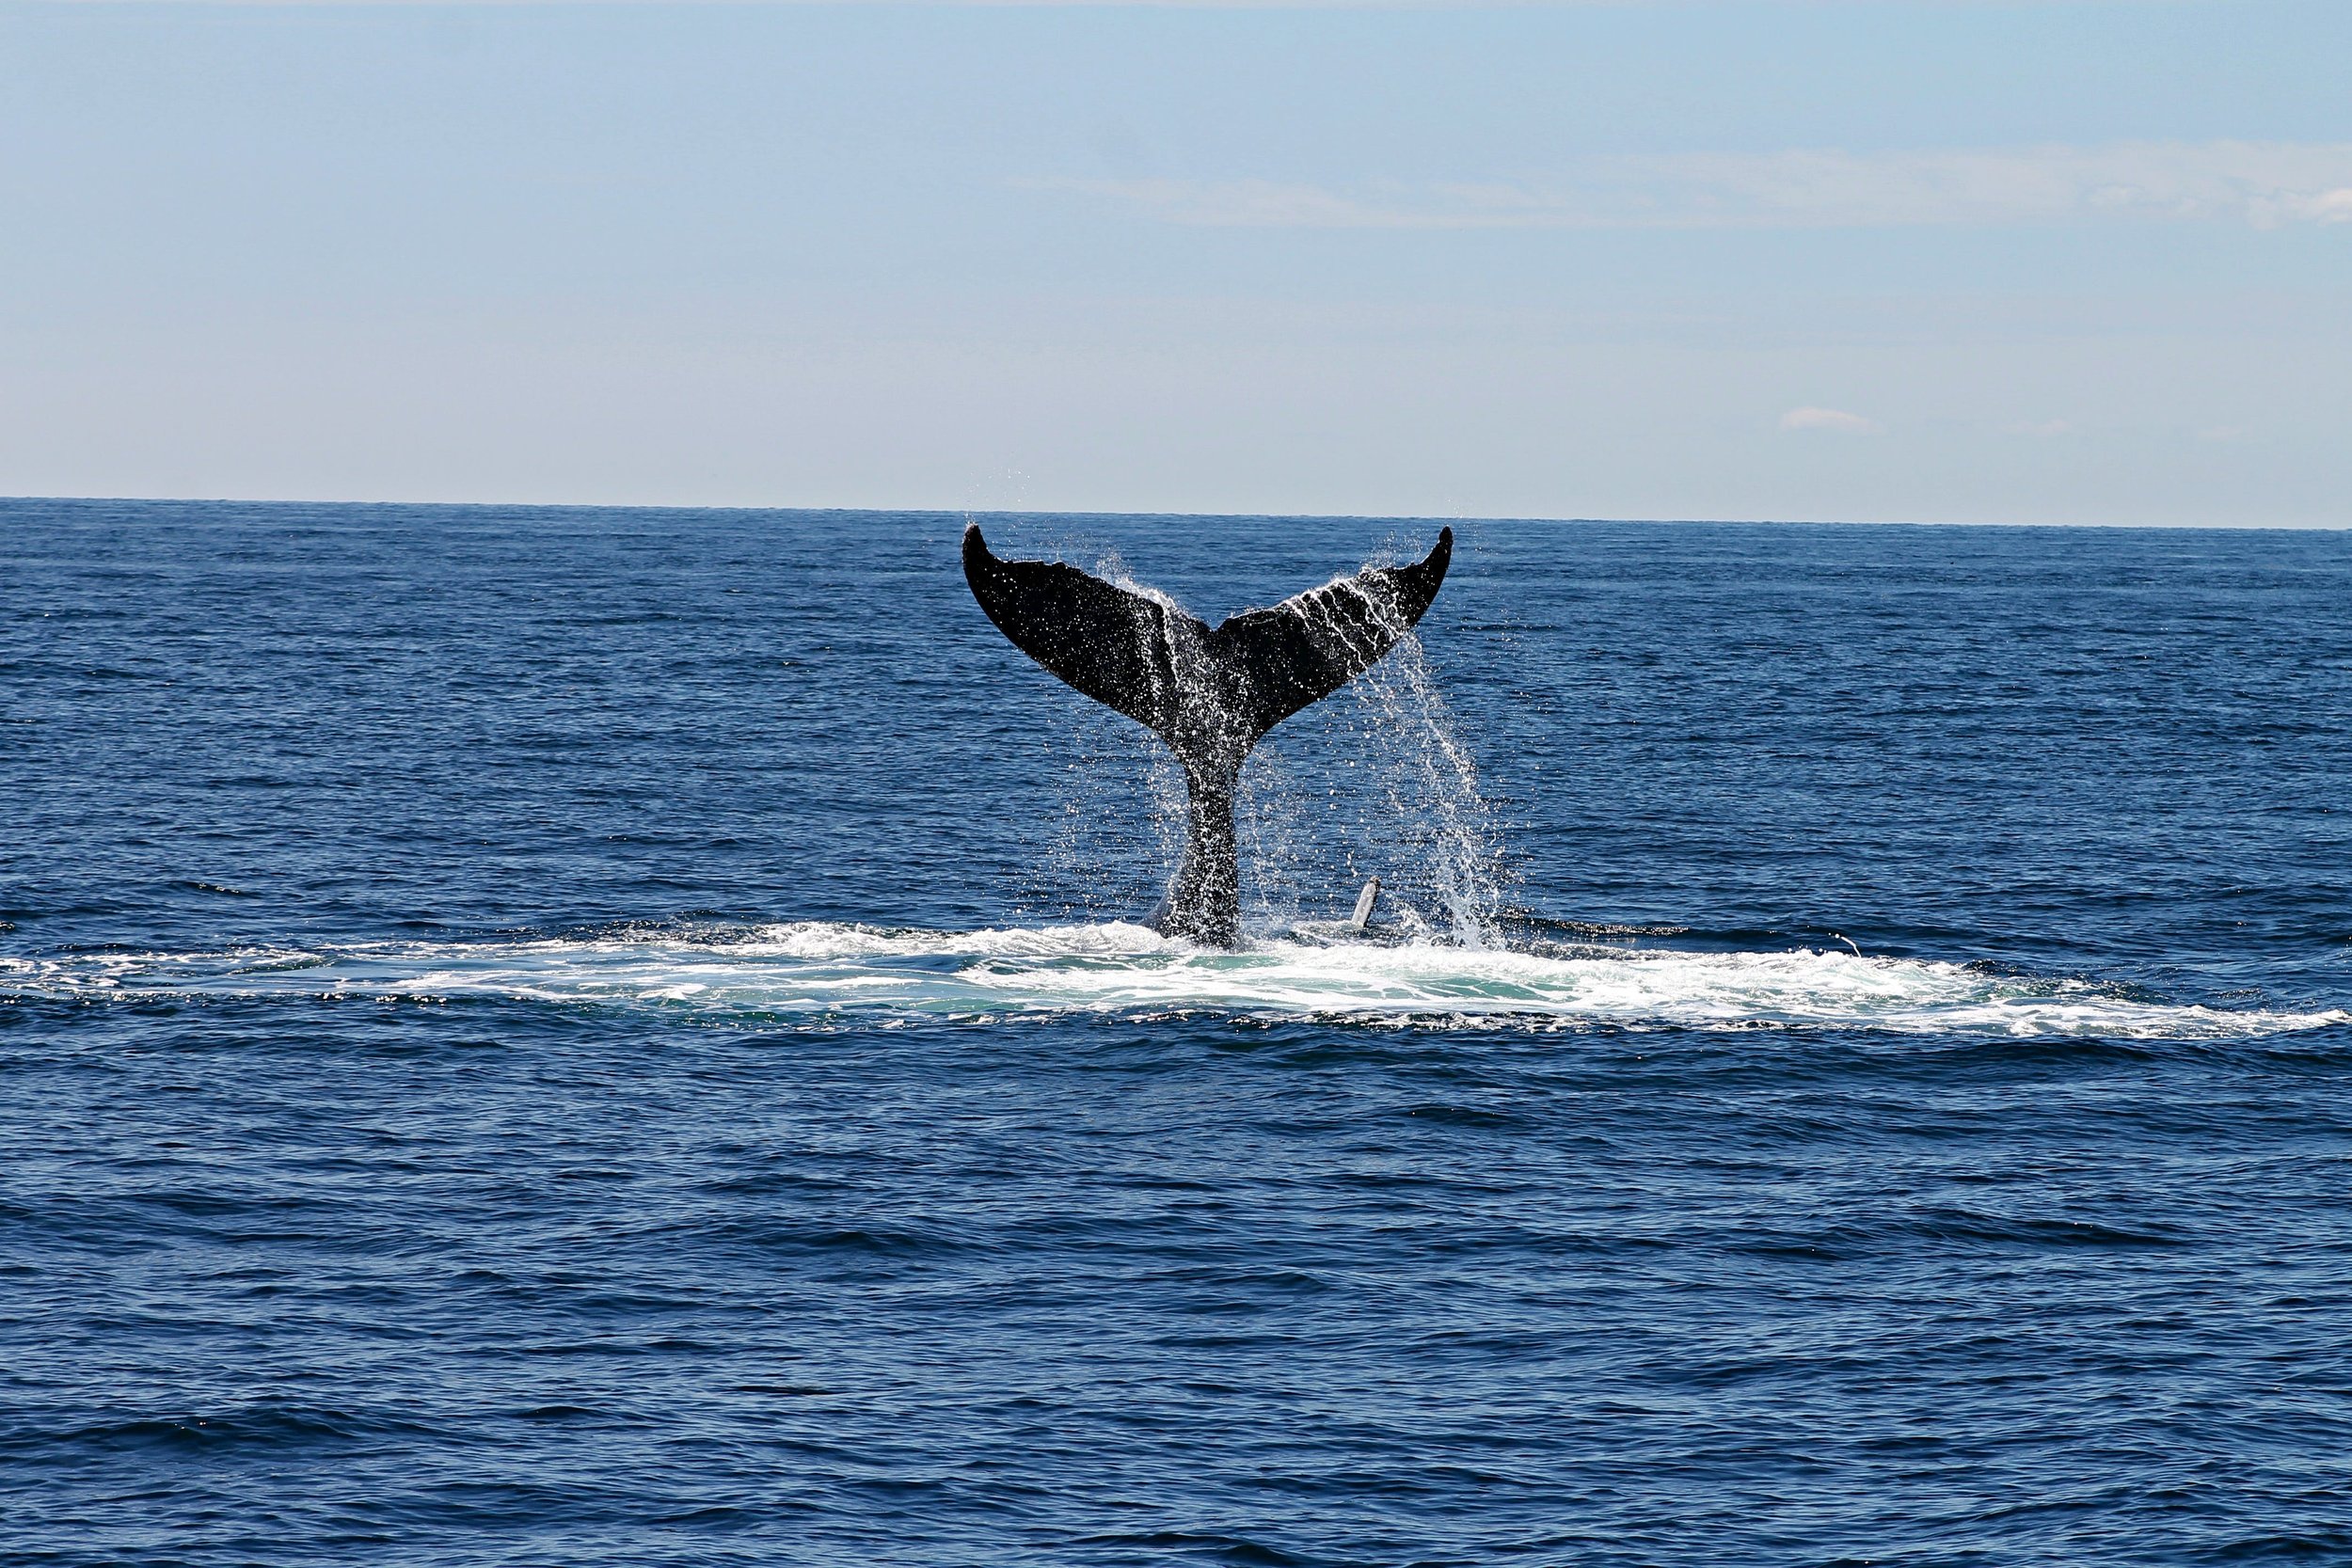 waikiki whale watch tour.jpg